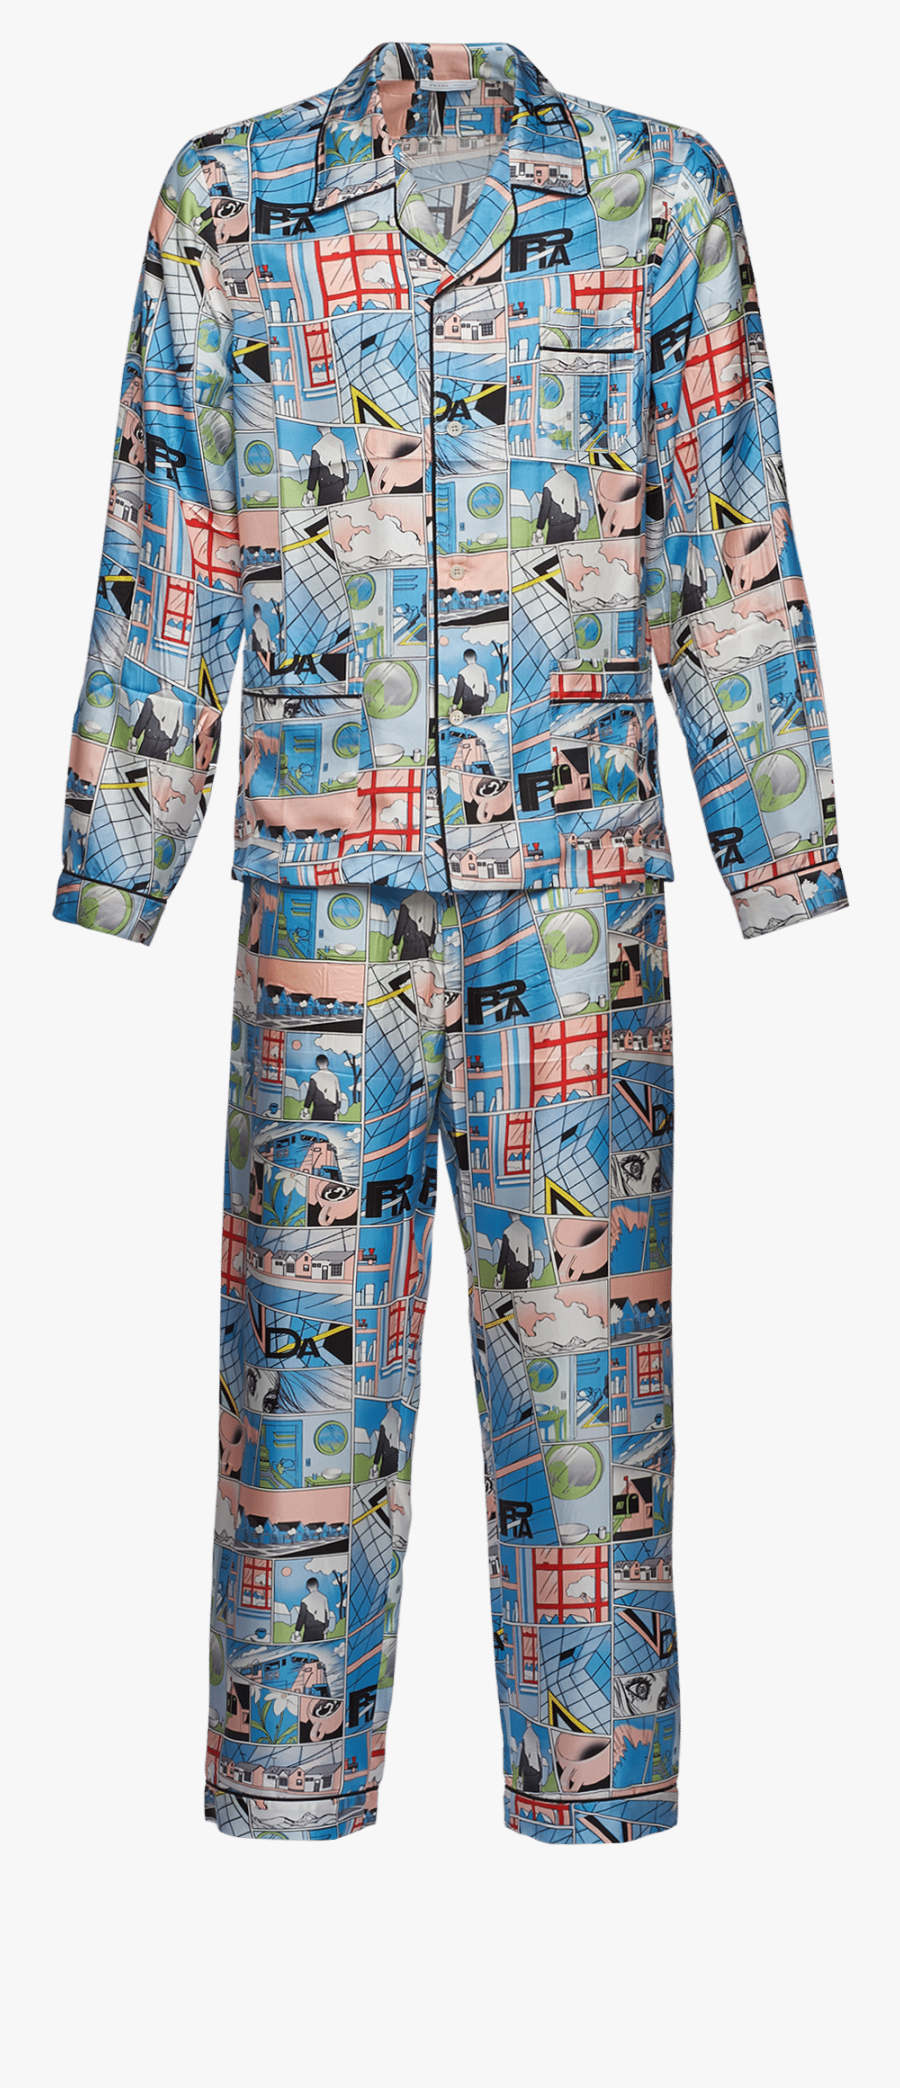 Transparent Pajama Png - Pajamas, Transparent Clipart